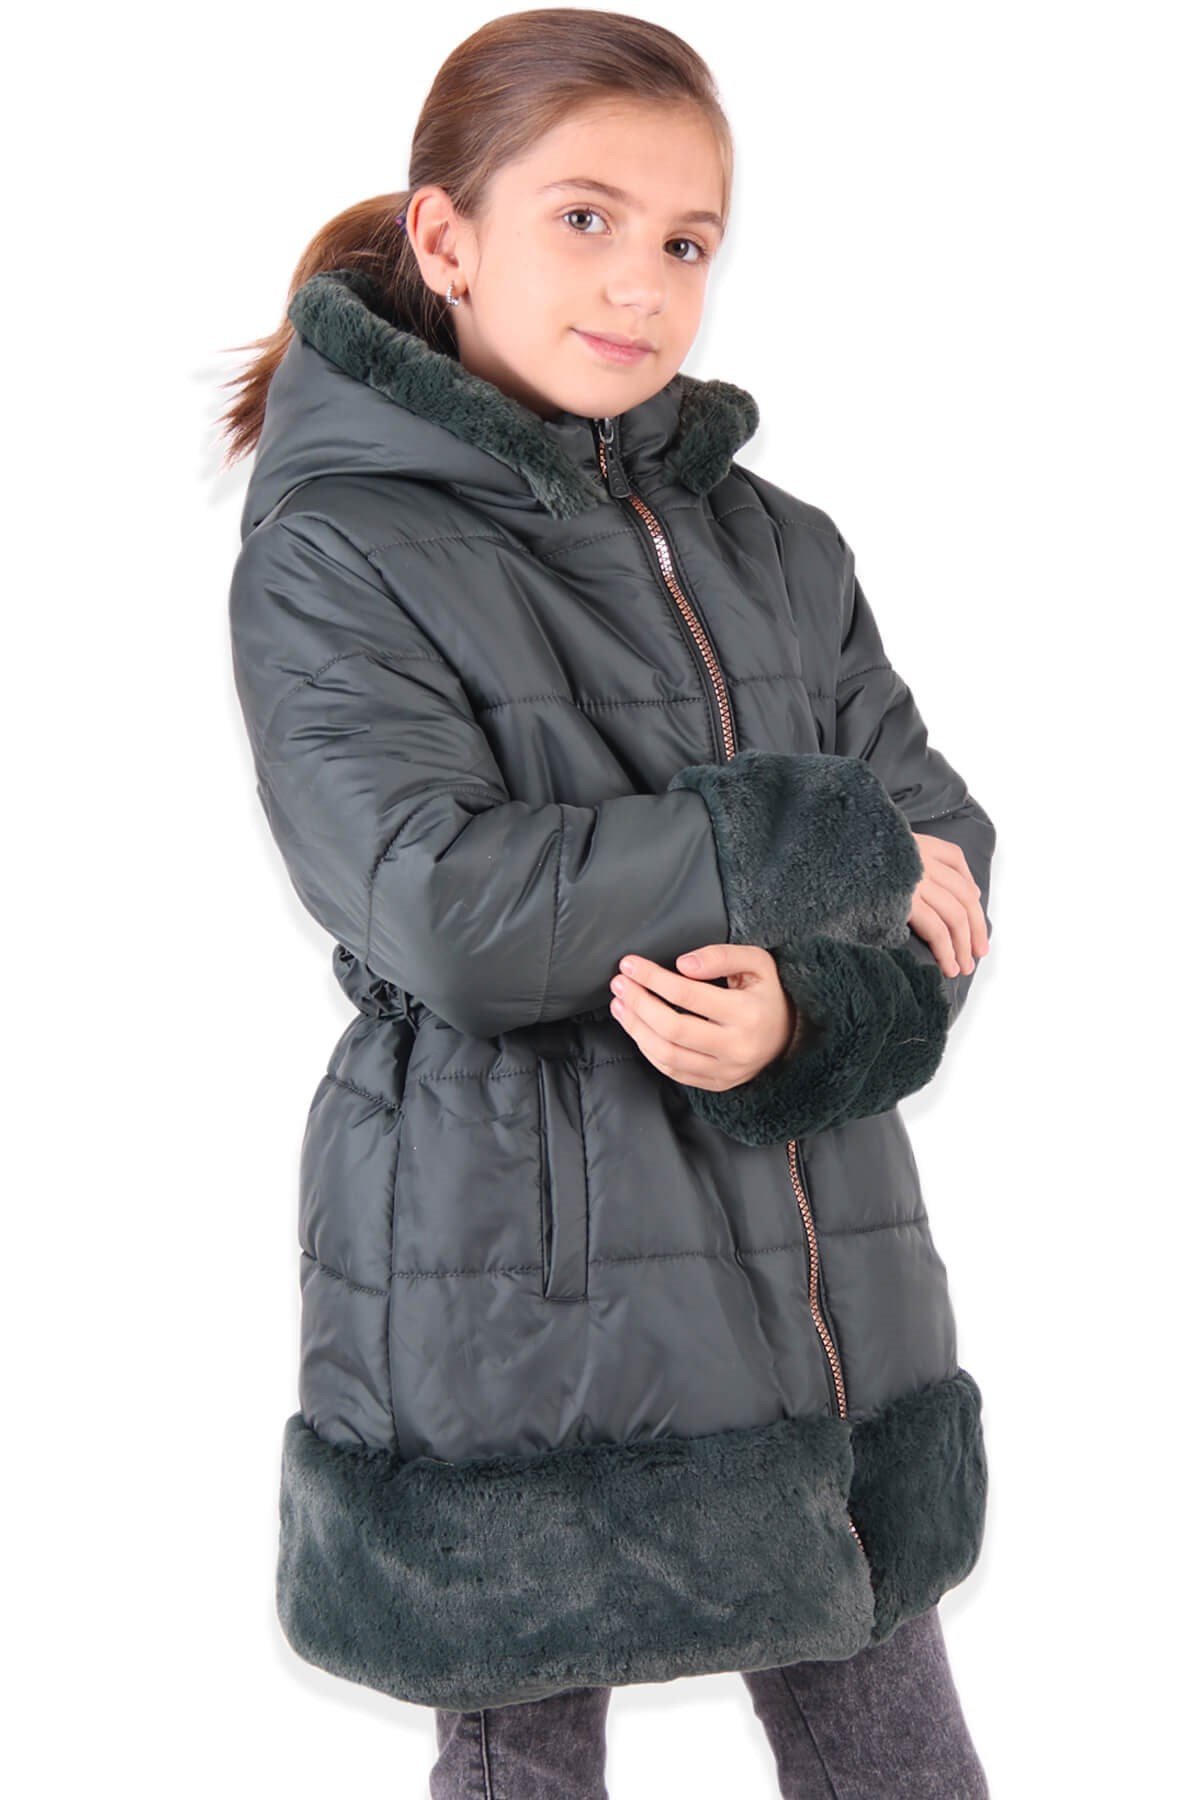 Kız Çocuk Mont Kürklü Yeşil 3 Yaş - Sıcacık Dış Giyim | Breeze